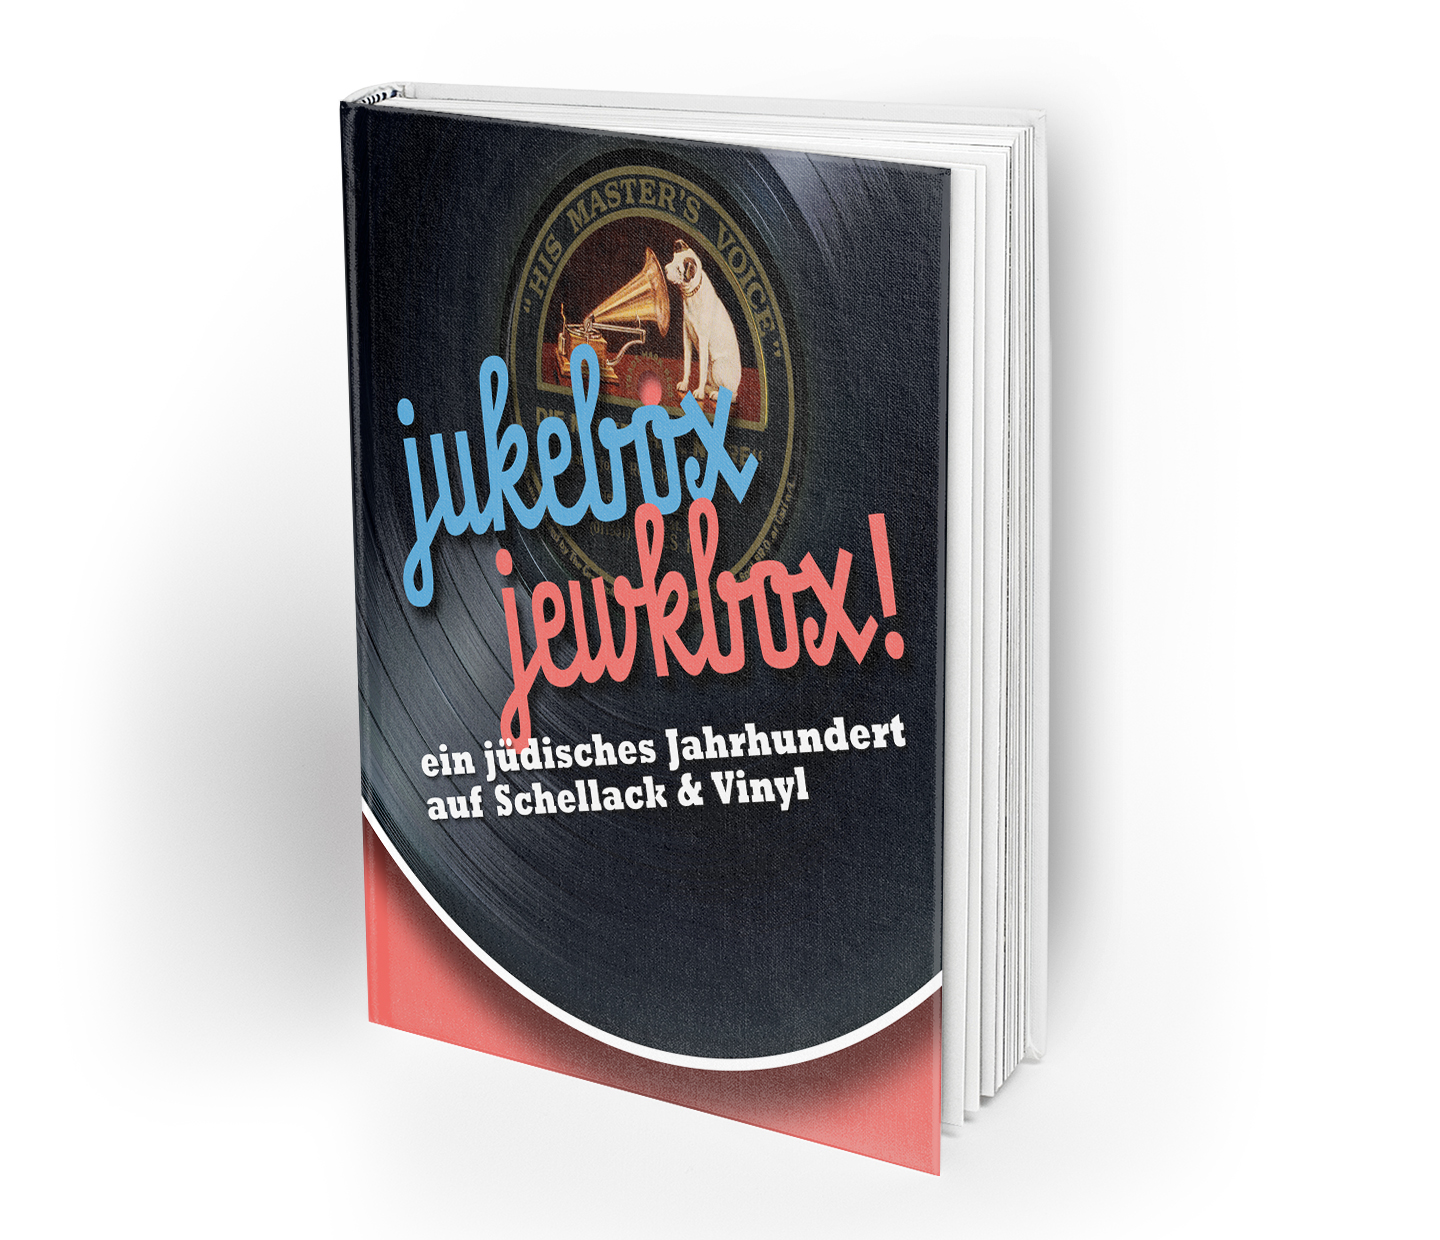 jukebox. jewkbox! Ein jüdisches Jahrhundert auf Schellack & Vinyl